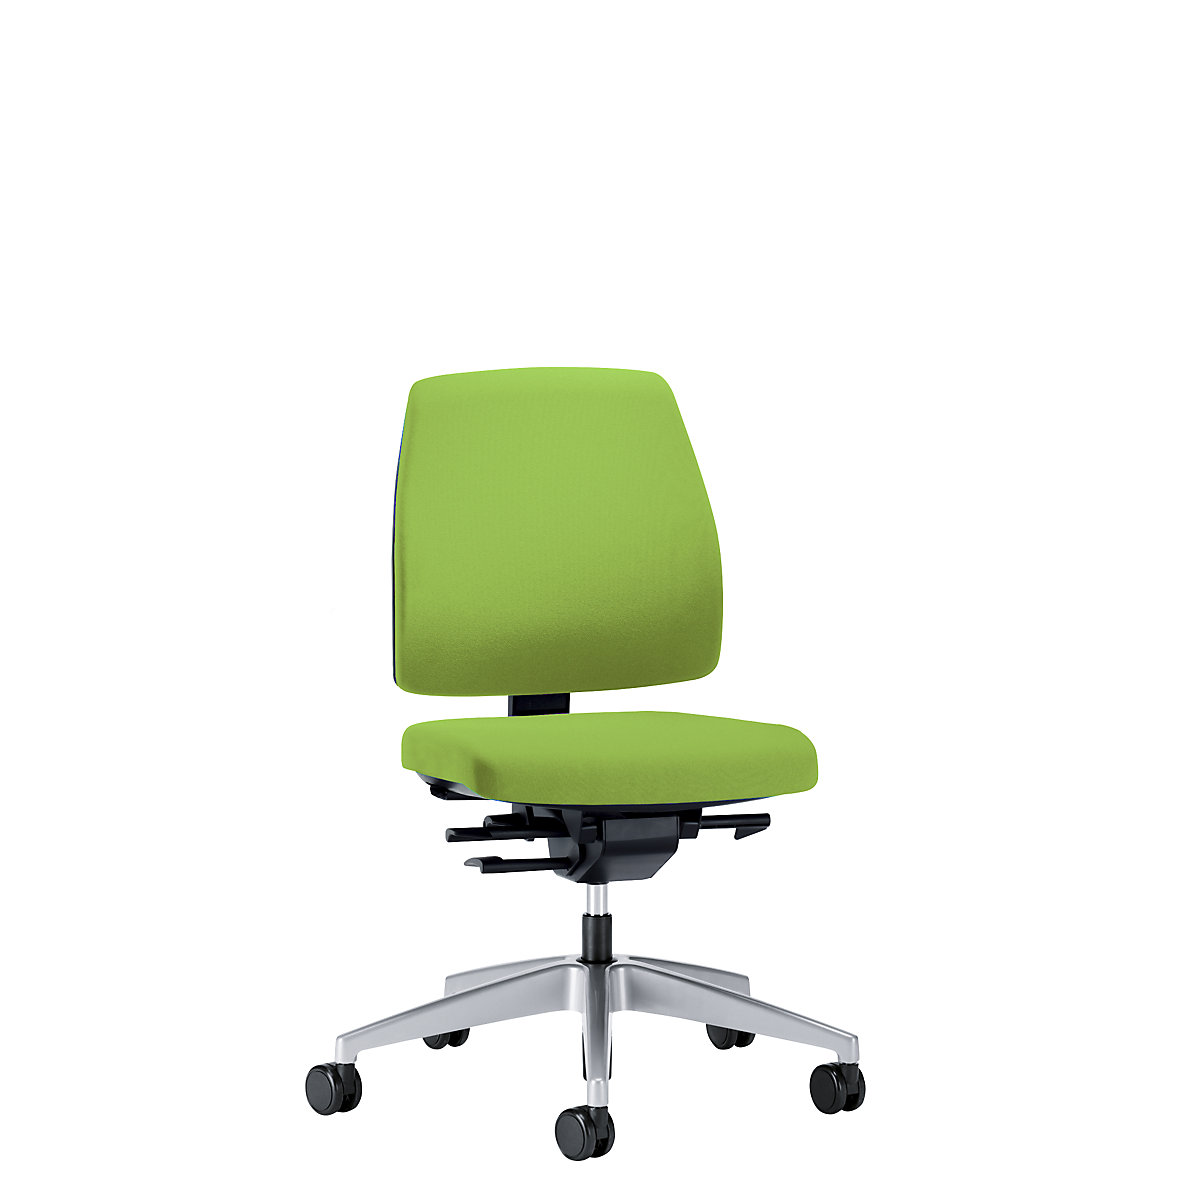 Obrotowe krzesło biurowe GOAL, wys. oparcia 430 mm – interstuhl, szkielet brylantowo-srebrny, z twardymi rolkami, żółto-zielony, głęb. siedziska 410 mm-6